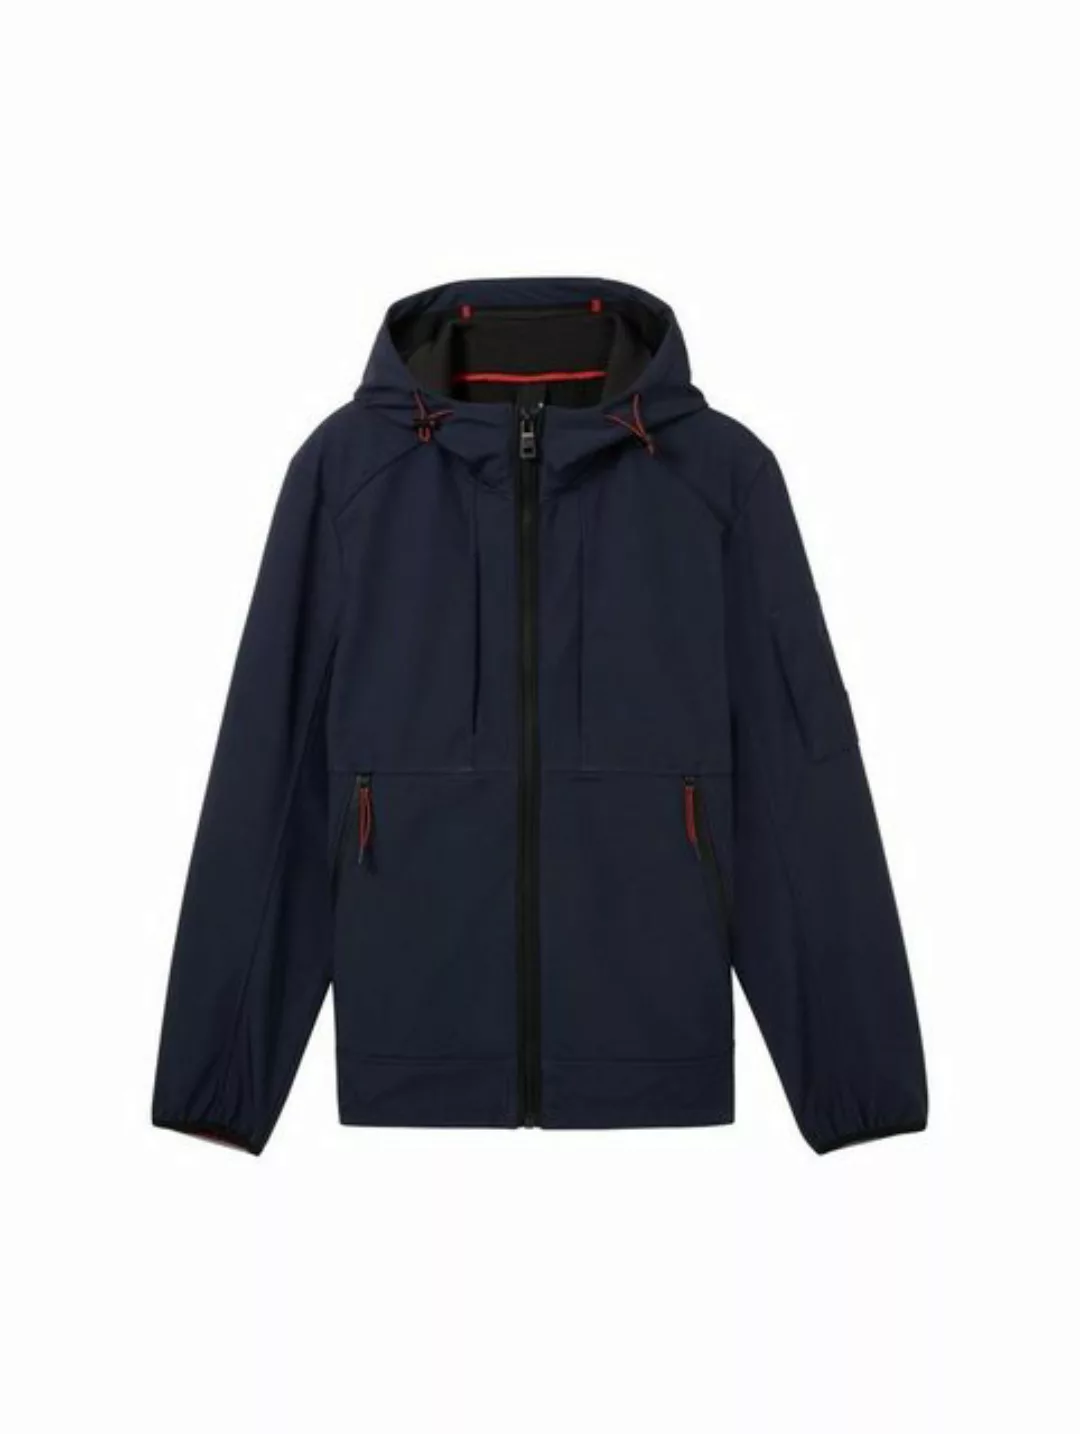 TOM TAILOR Outdoorjacke softshell jacket, sky captain blue günstig online kaufen